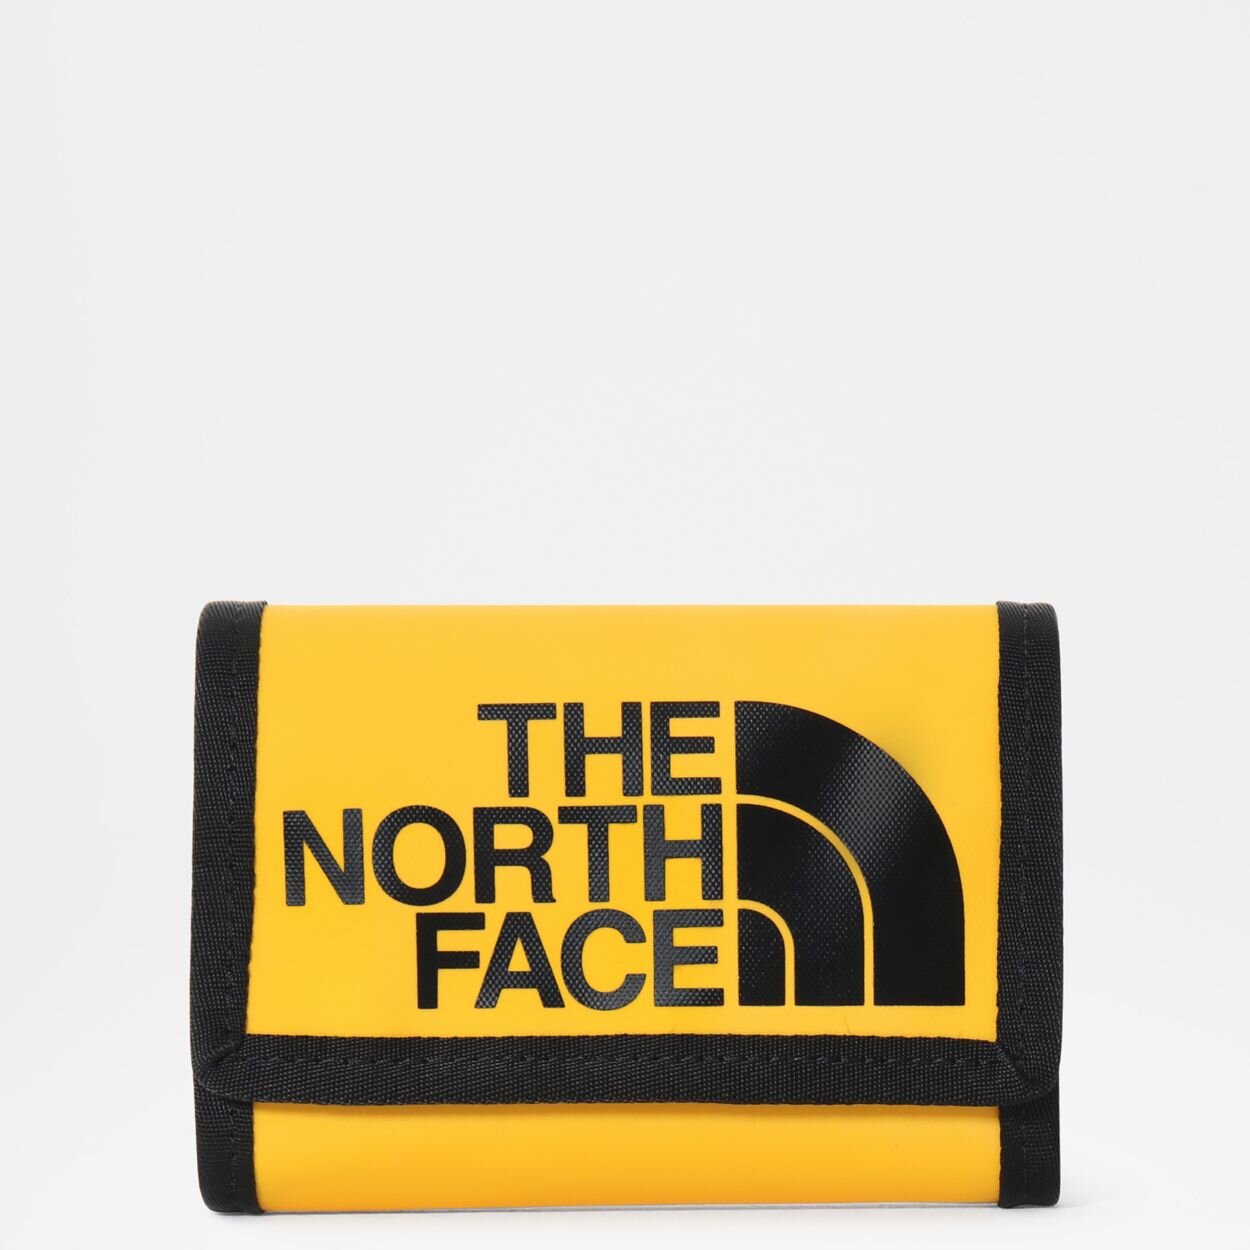 THE NORTH FACE Cüzdan Sarı